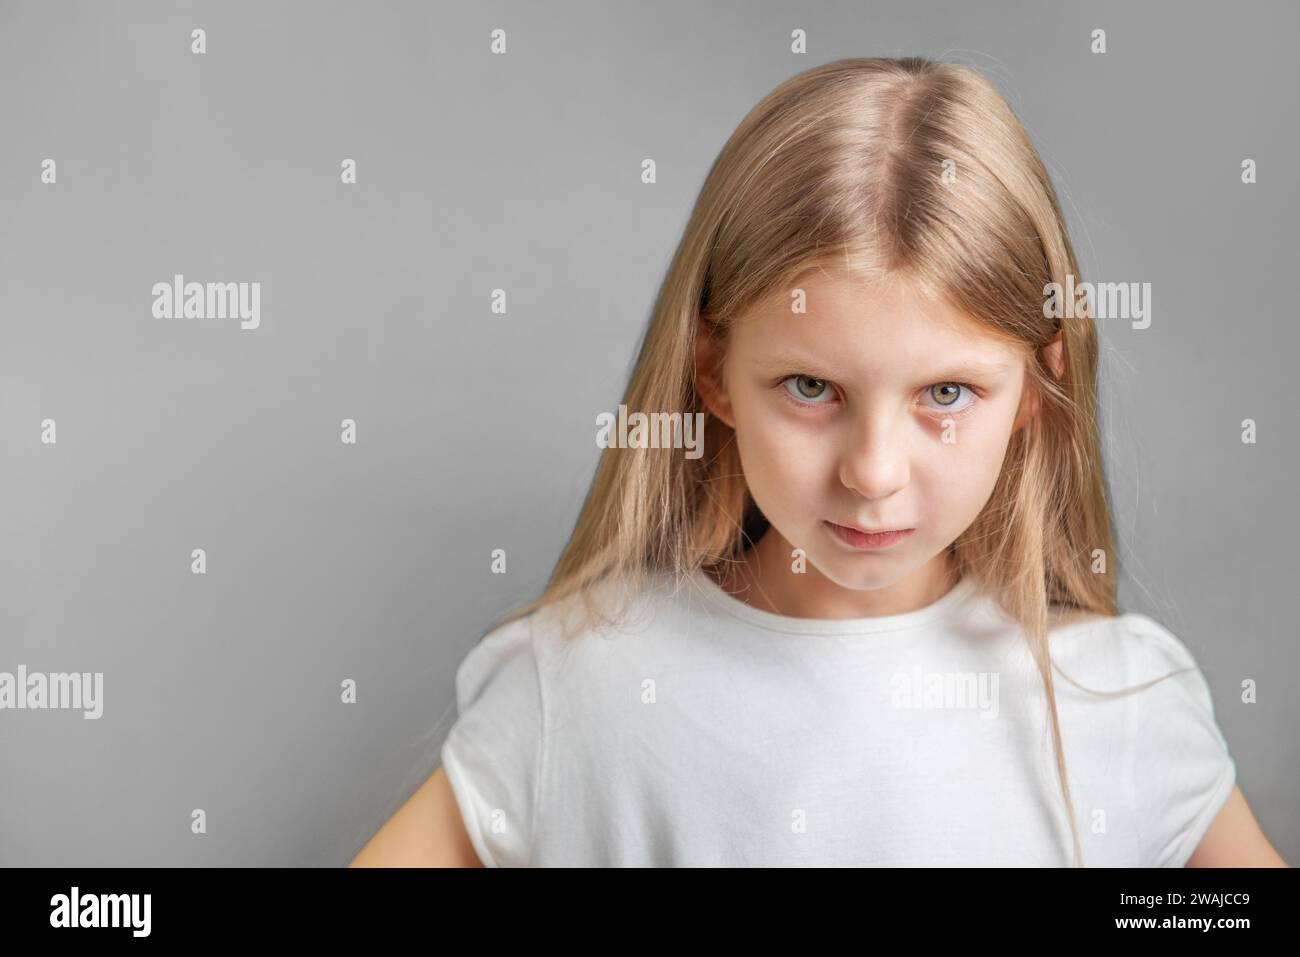 Ritratto di una bambina triste con t-shirt bianca su sfondo grigio Foto Stock